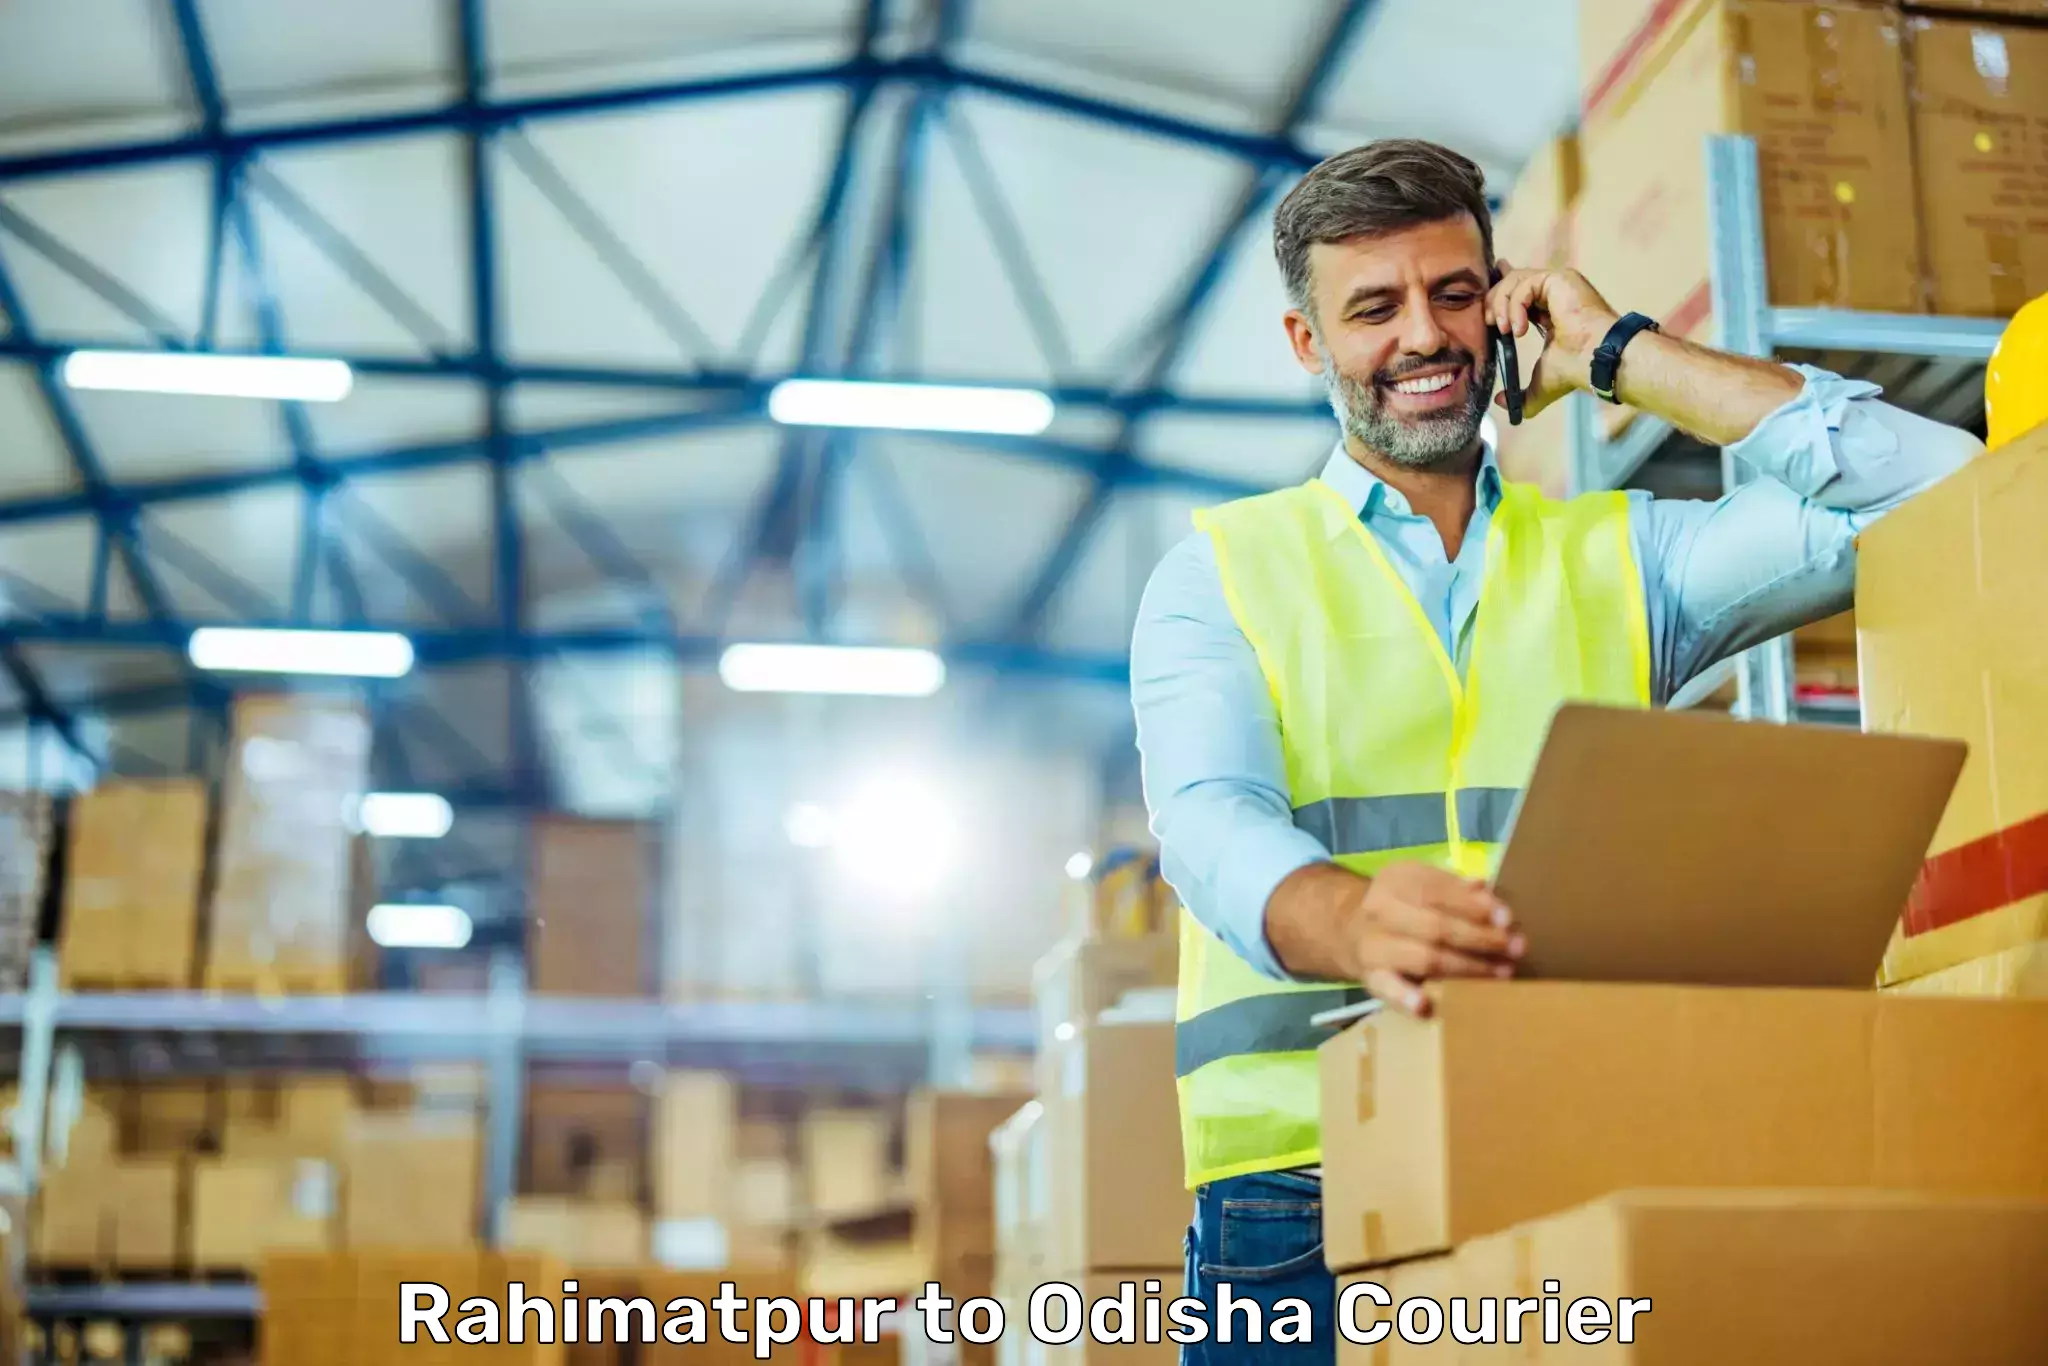 Efficient logistics management Rahimatpur to Muniguda